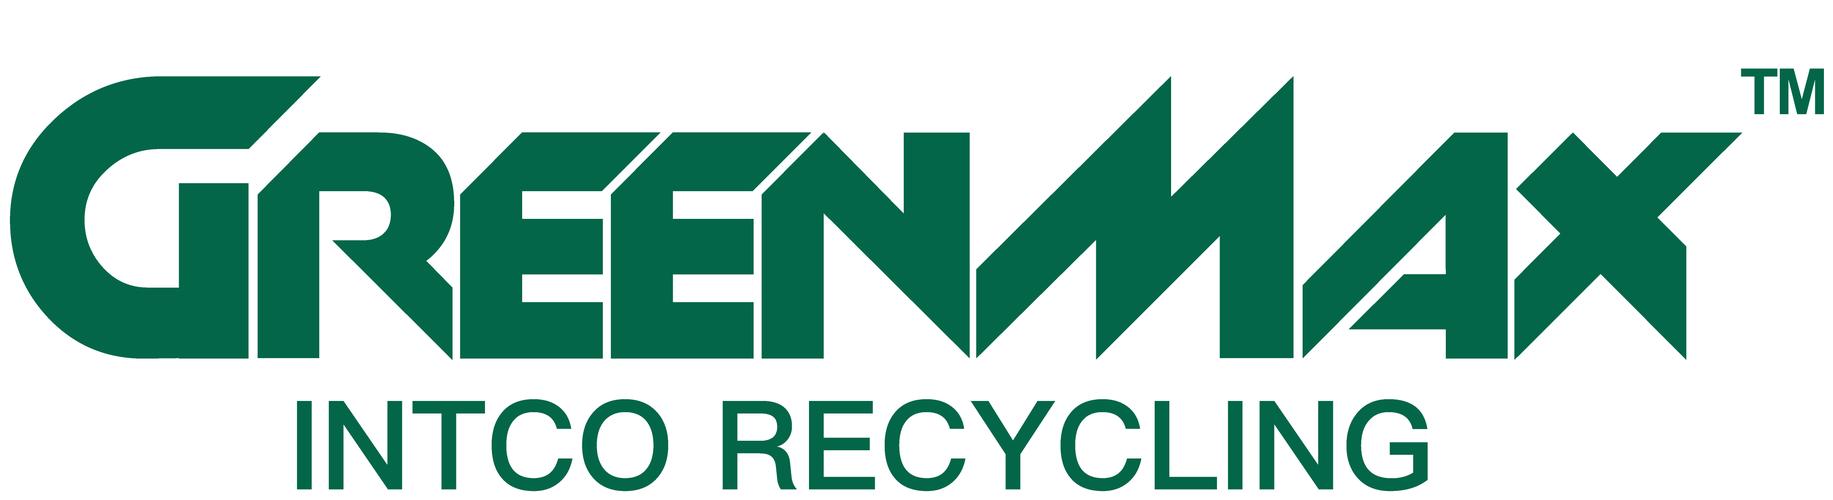 利用业务,创新的打通了塑料循环再利用的全产业链,是将塑料回收再生与